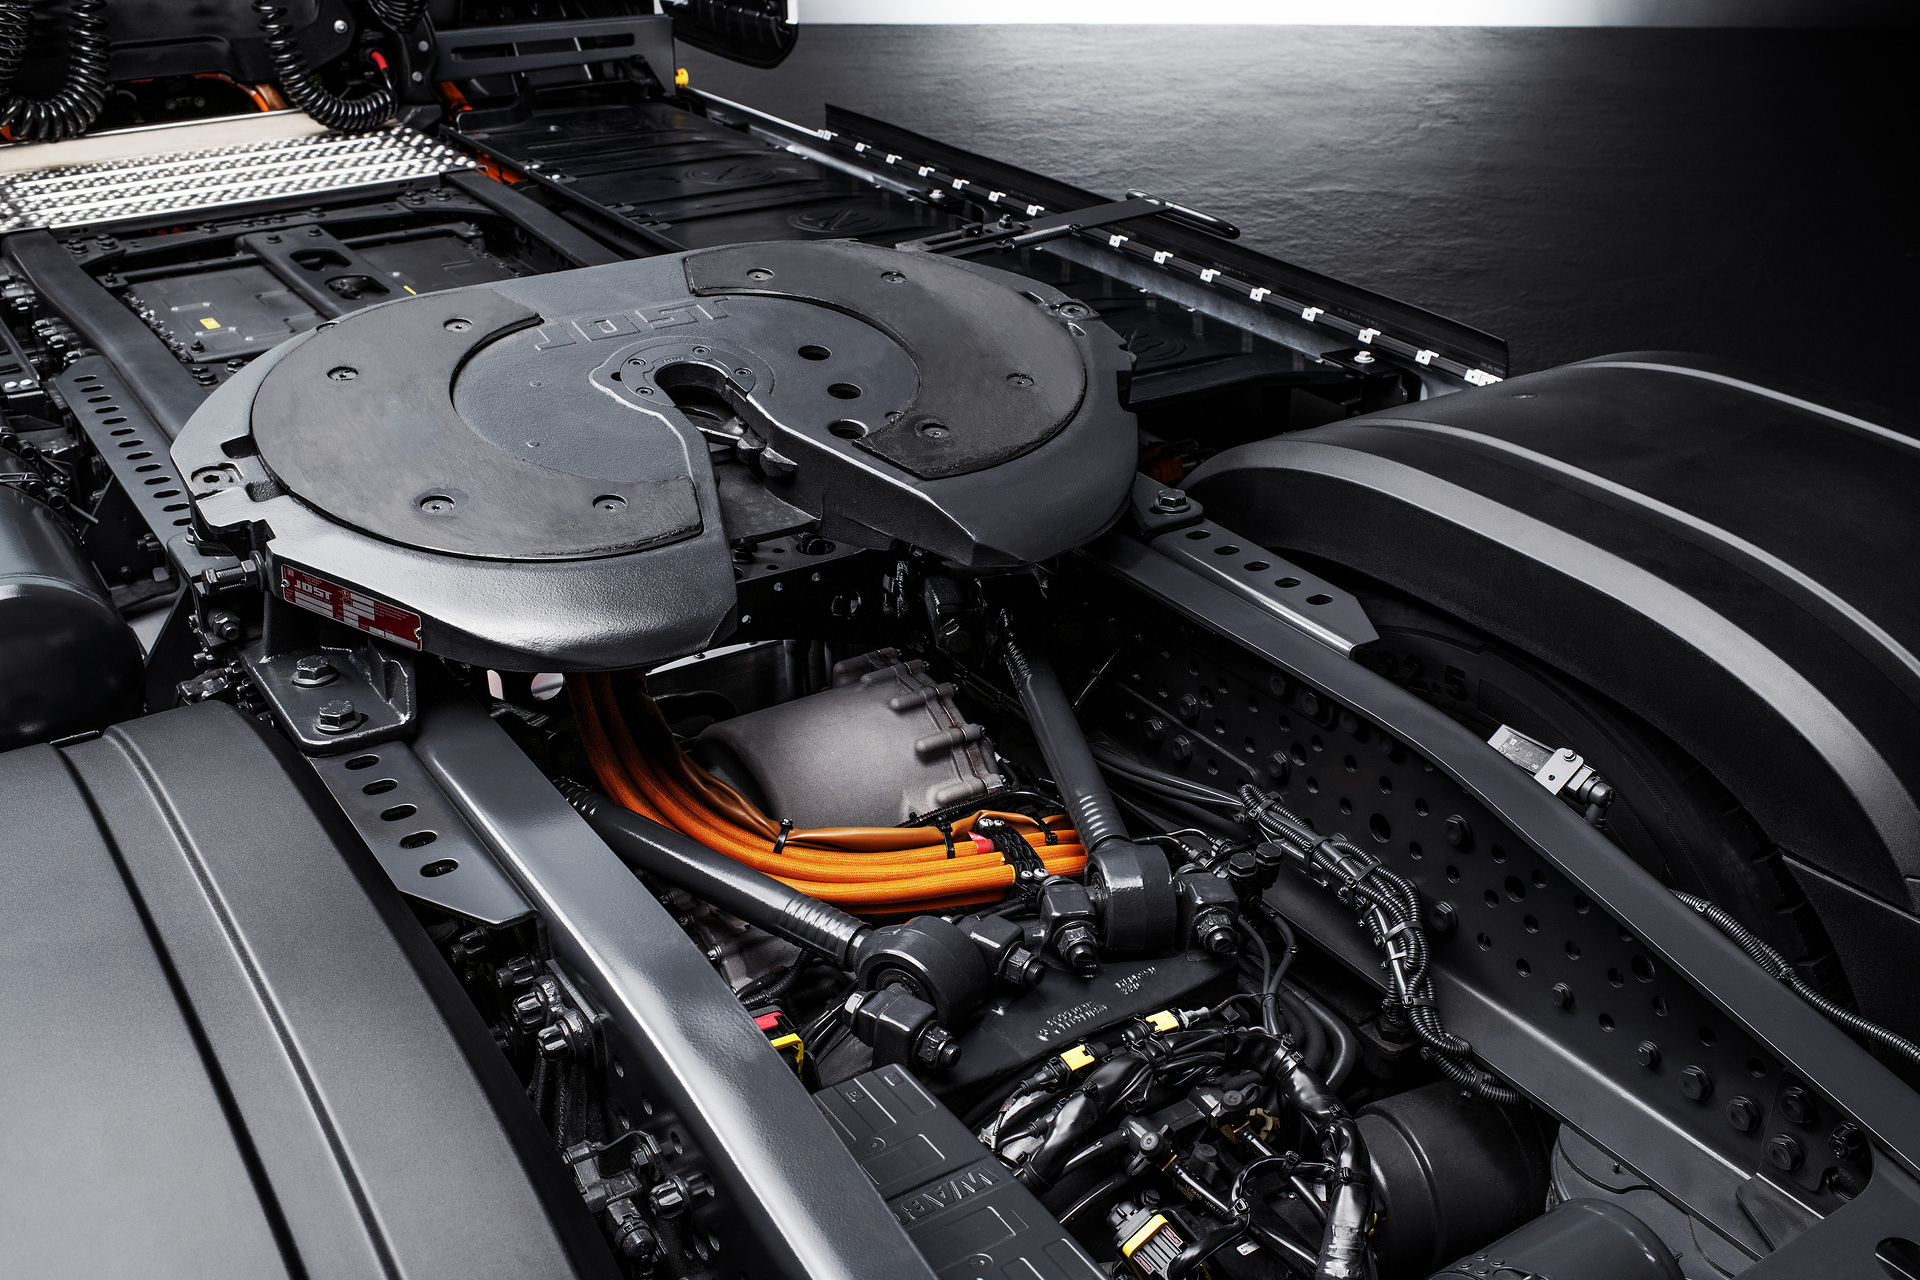 Mercedes-Benz Trucks feiert Weltpremiere des batterieelektrischen Fernverkehrs-Lkw eActros 600